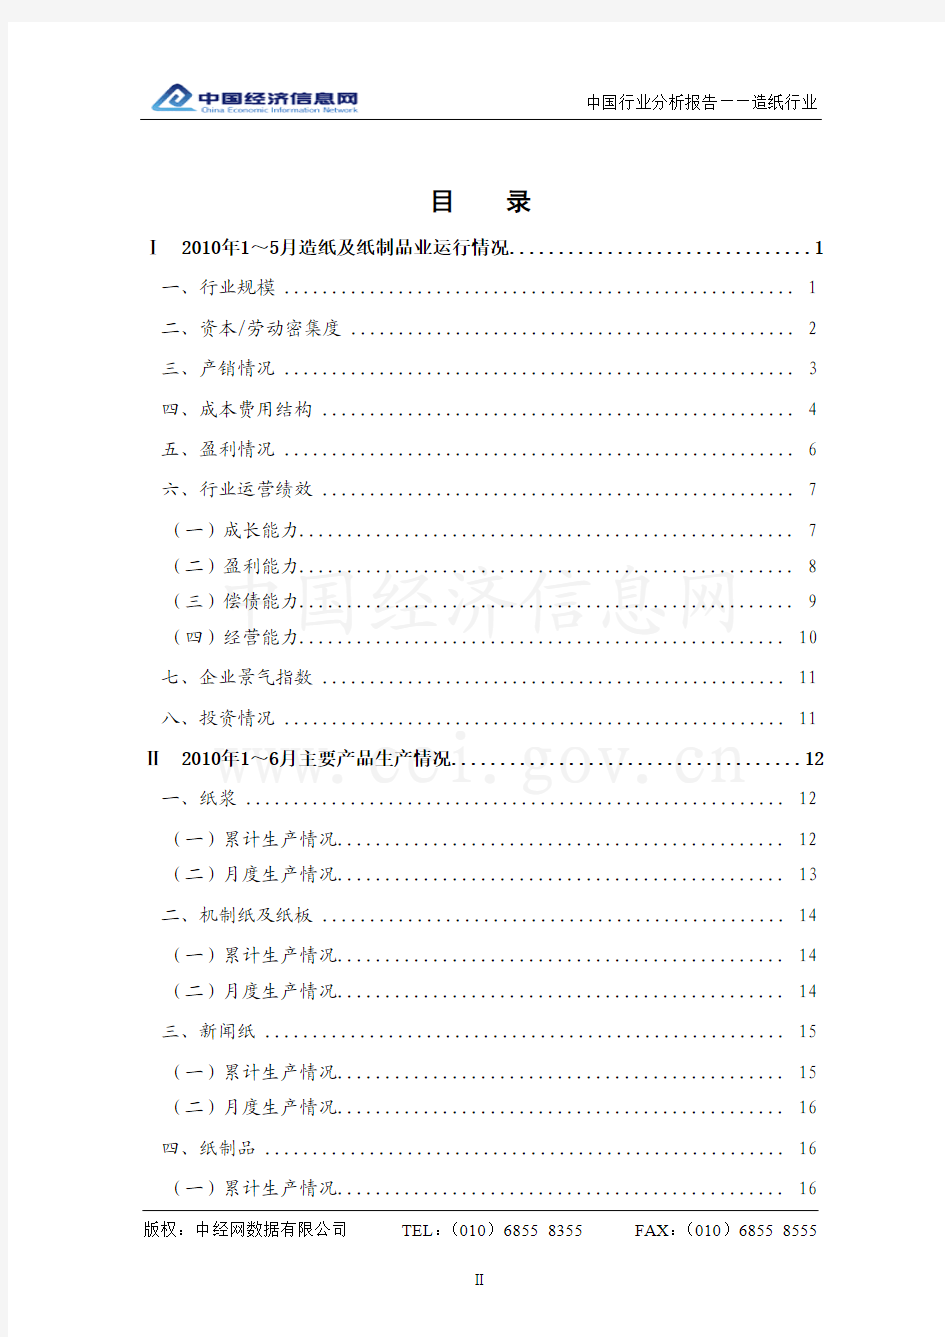 中国造纸行业2009-2010年分析报告